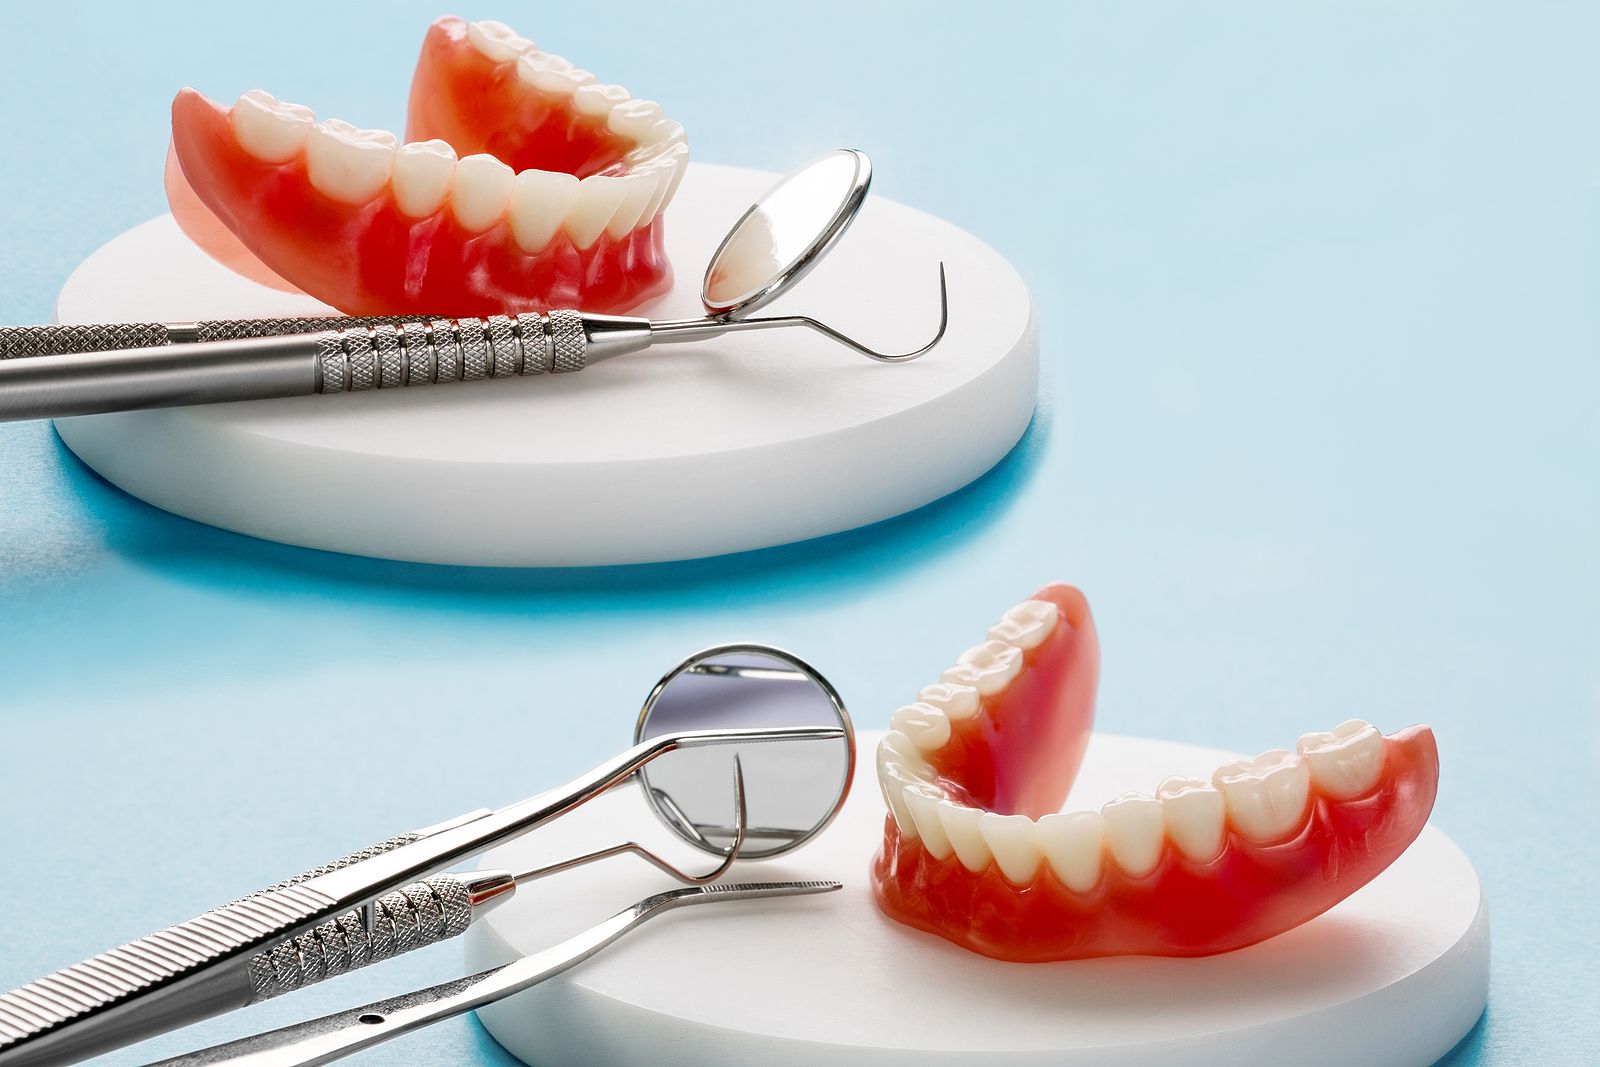 ¿Qué es mejor un puente o un implante dental?